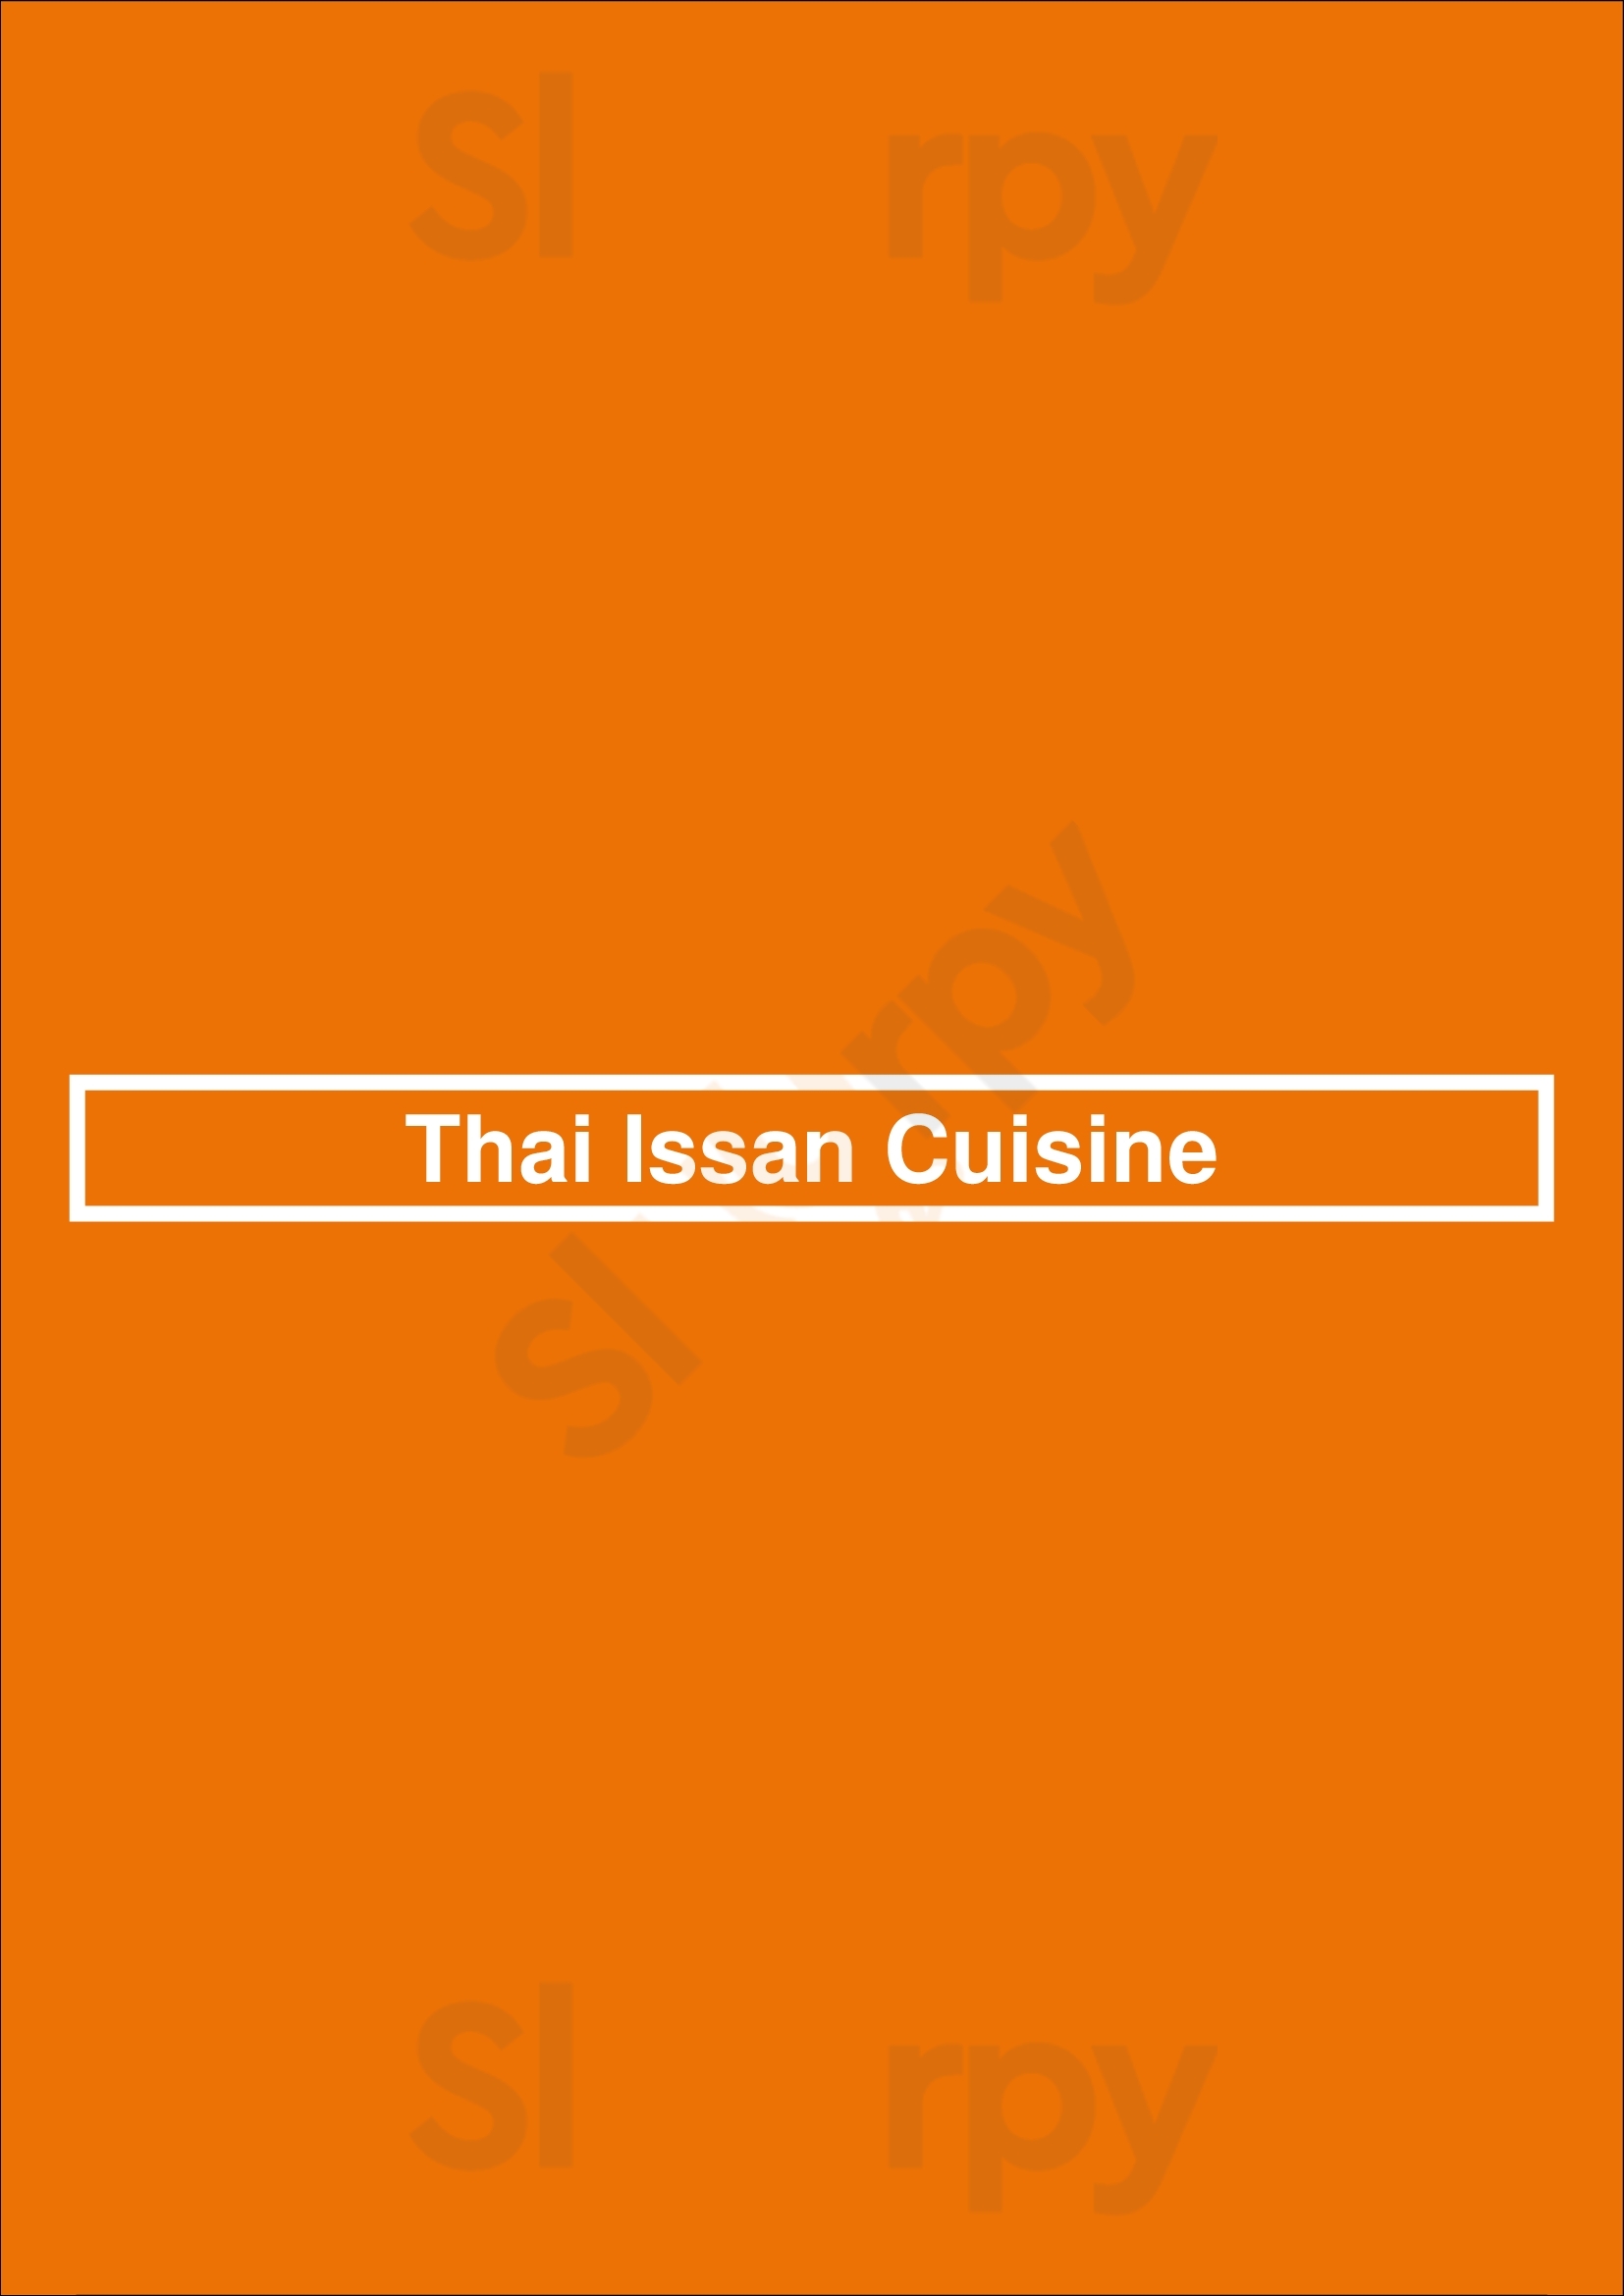 Thai Issan Cuisine Honolulu Menu - 1